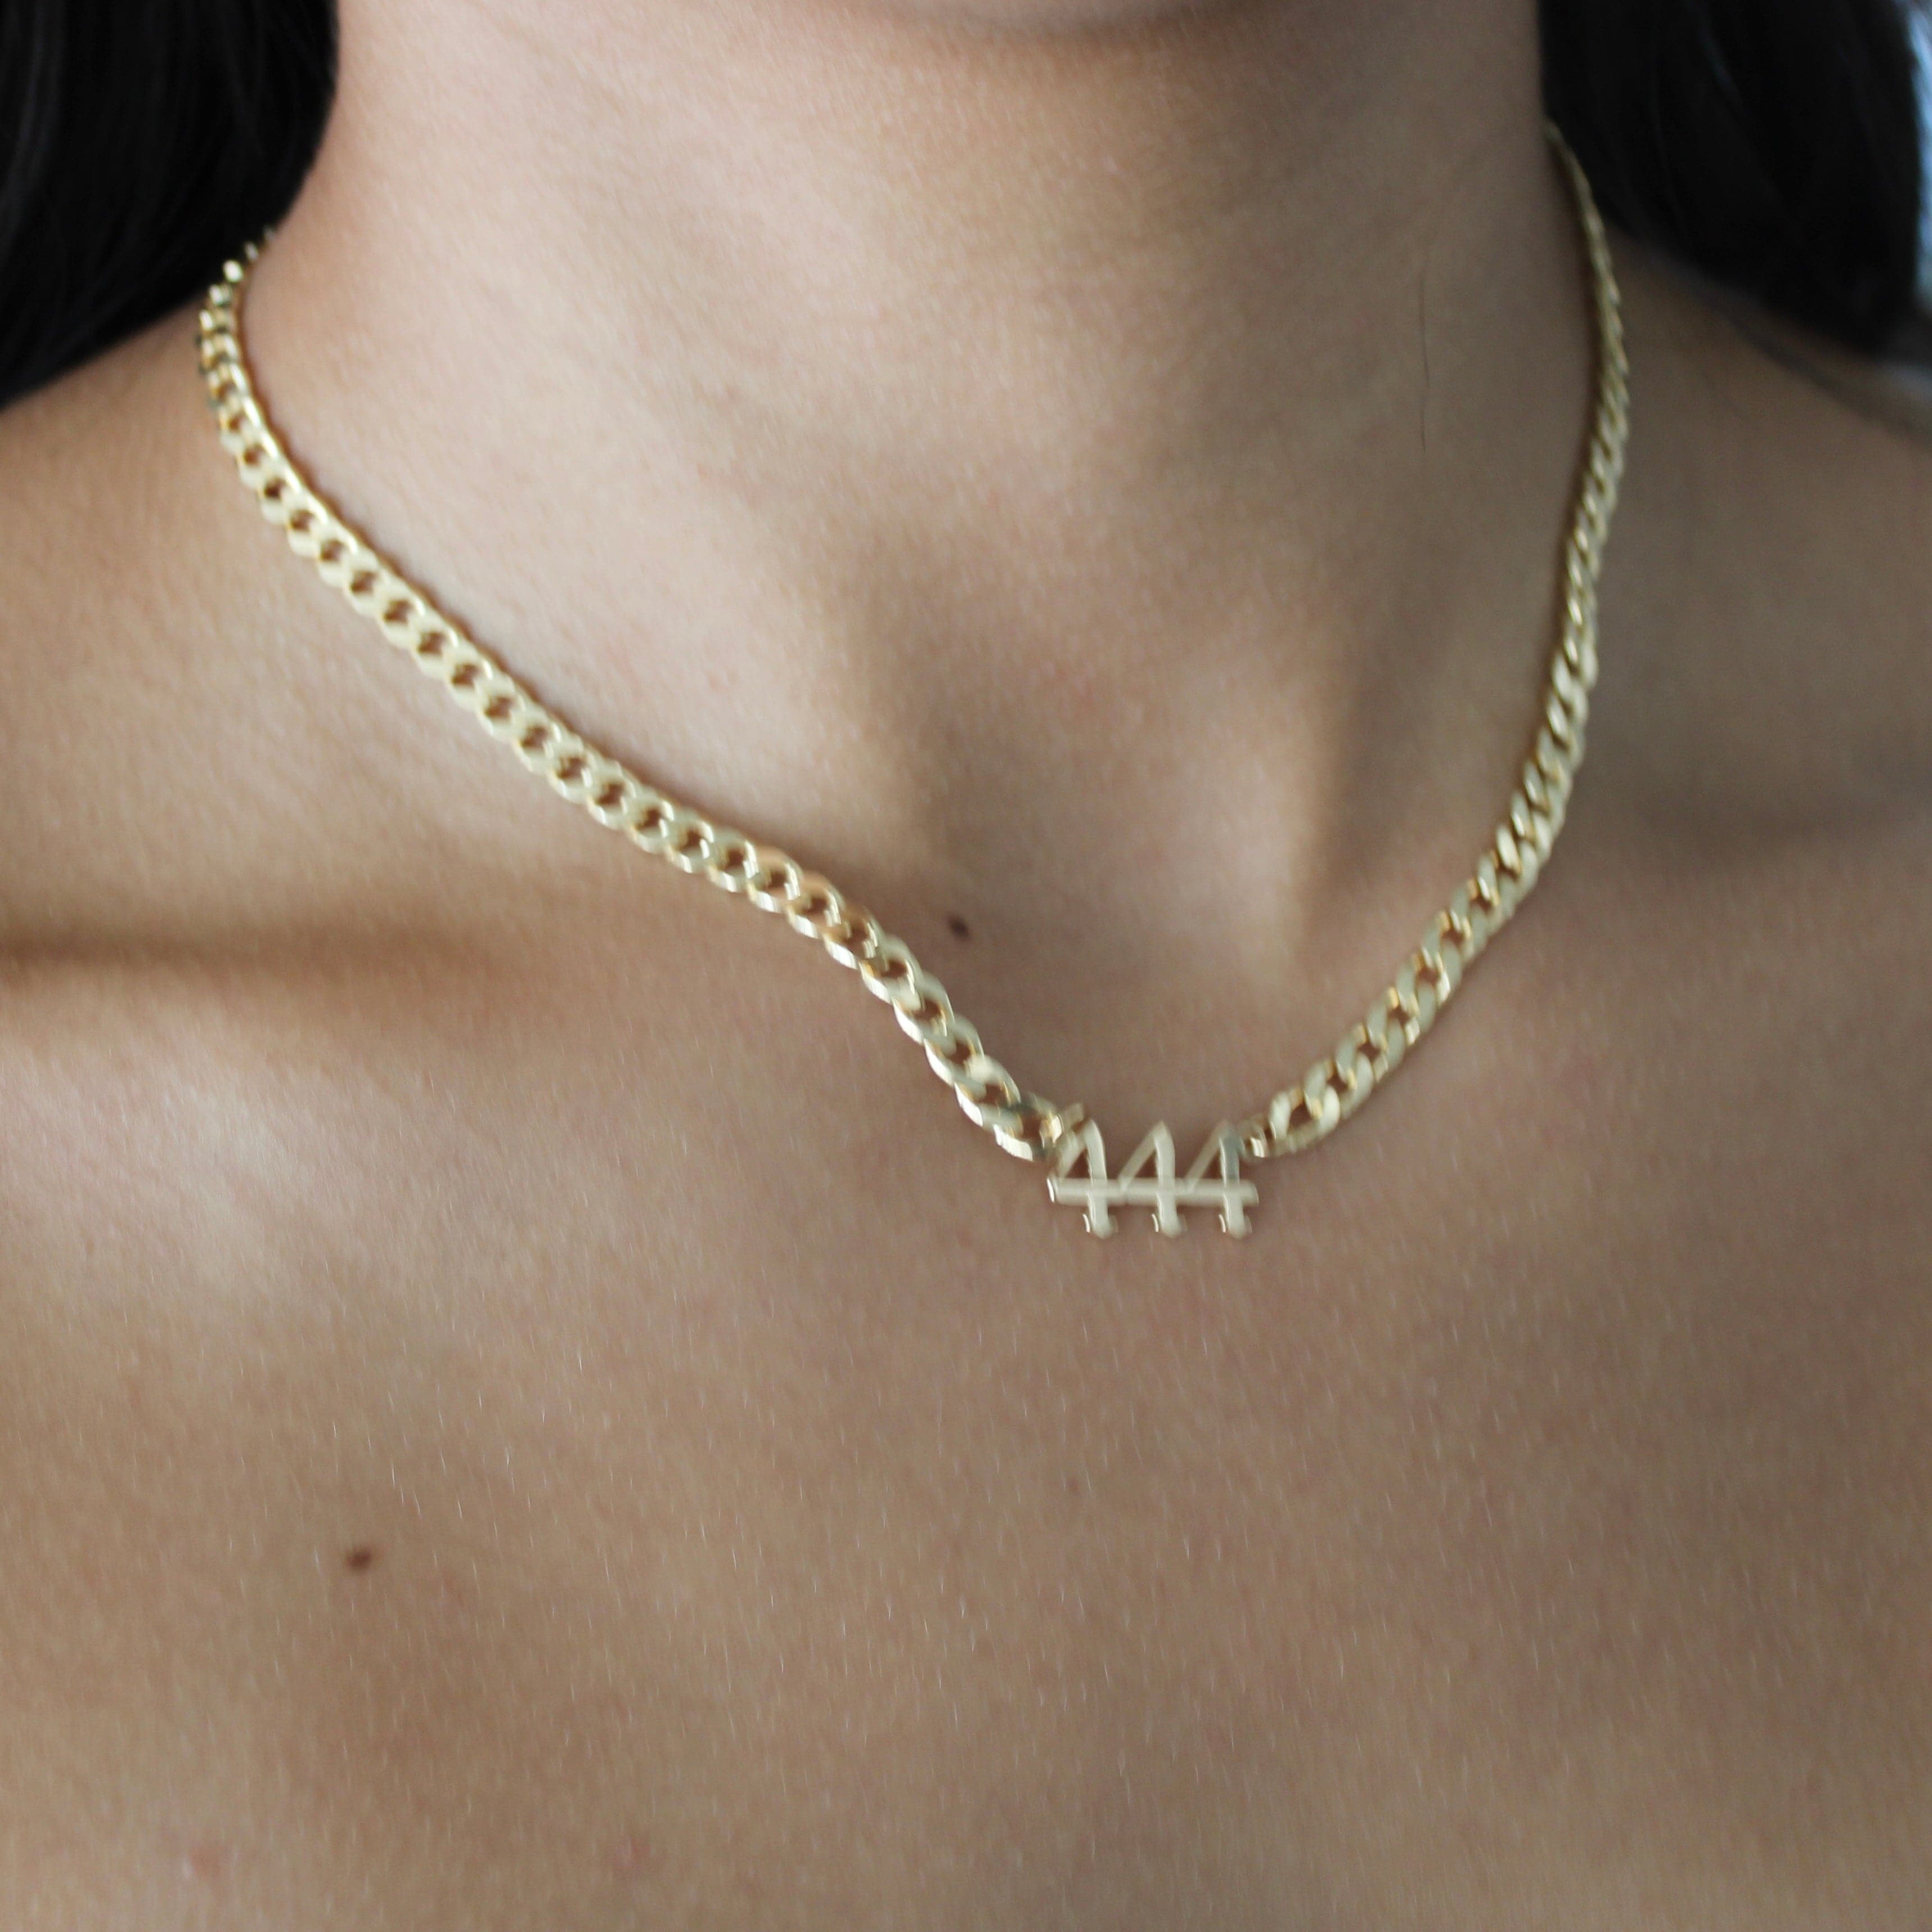 正規品! Hilis Jewelry 444 Angel Numbers Necklace For Women